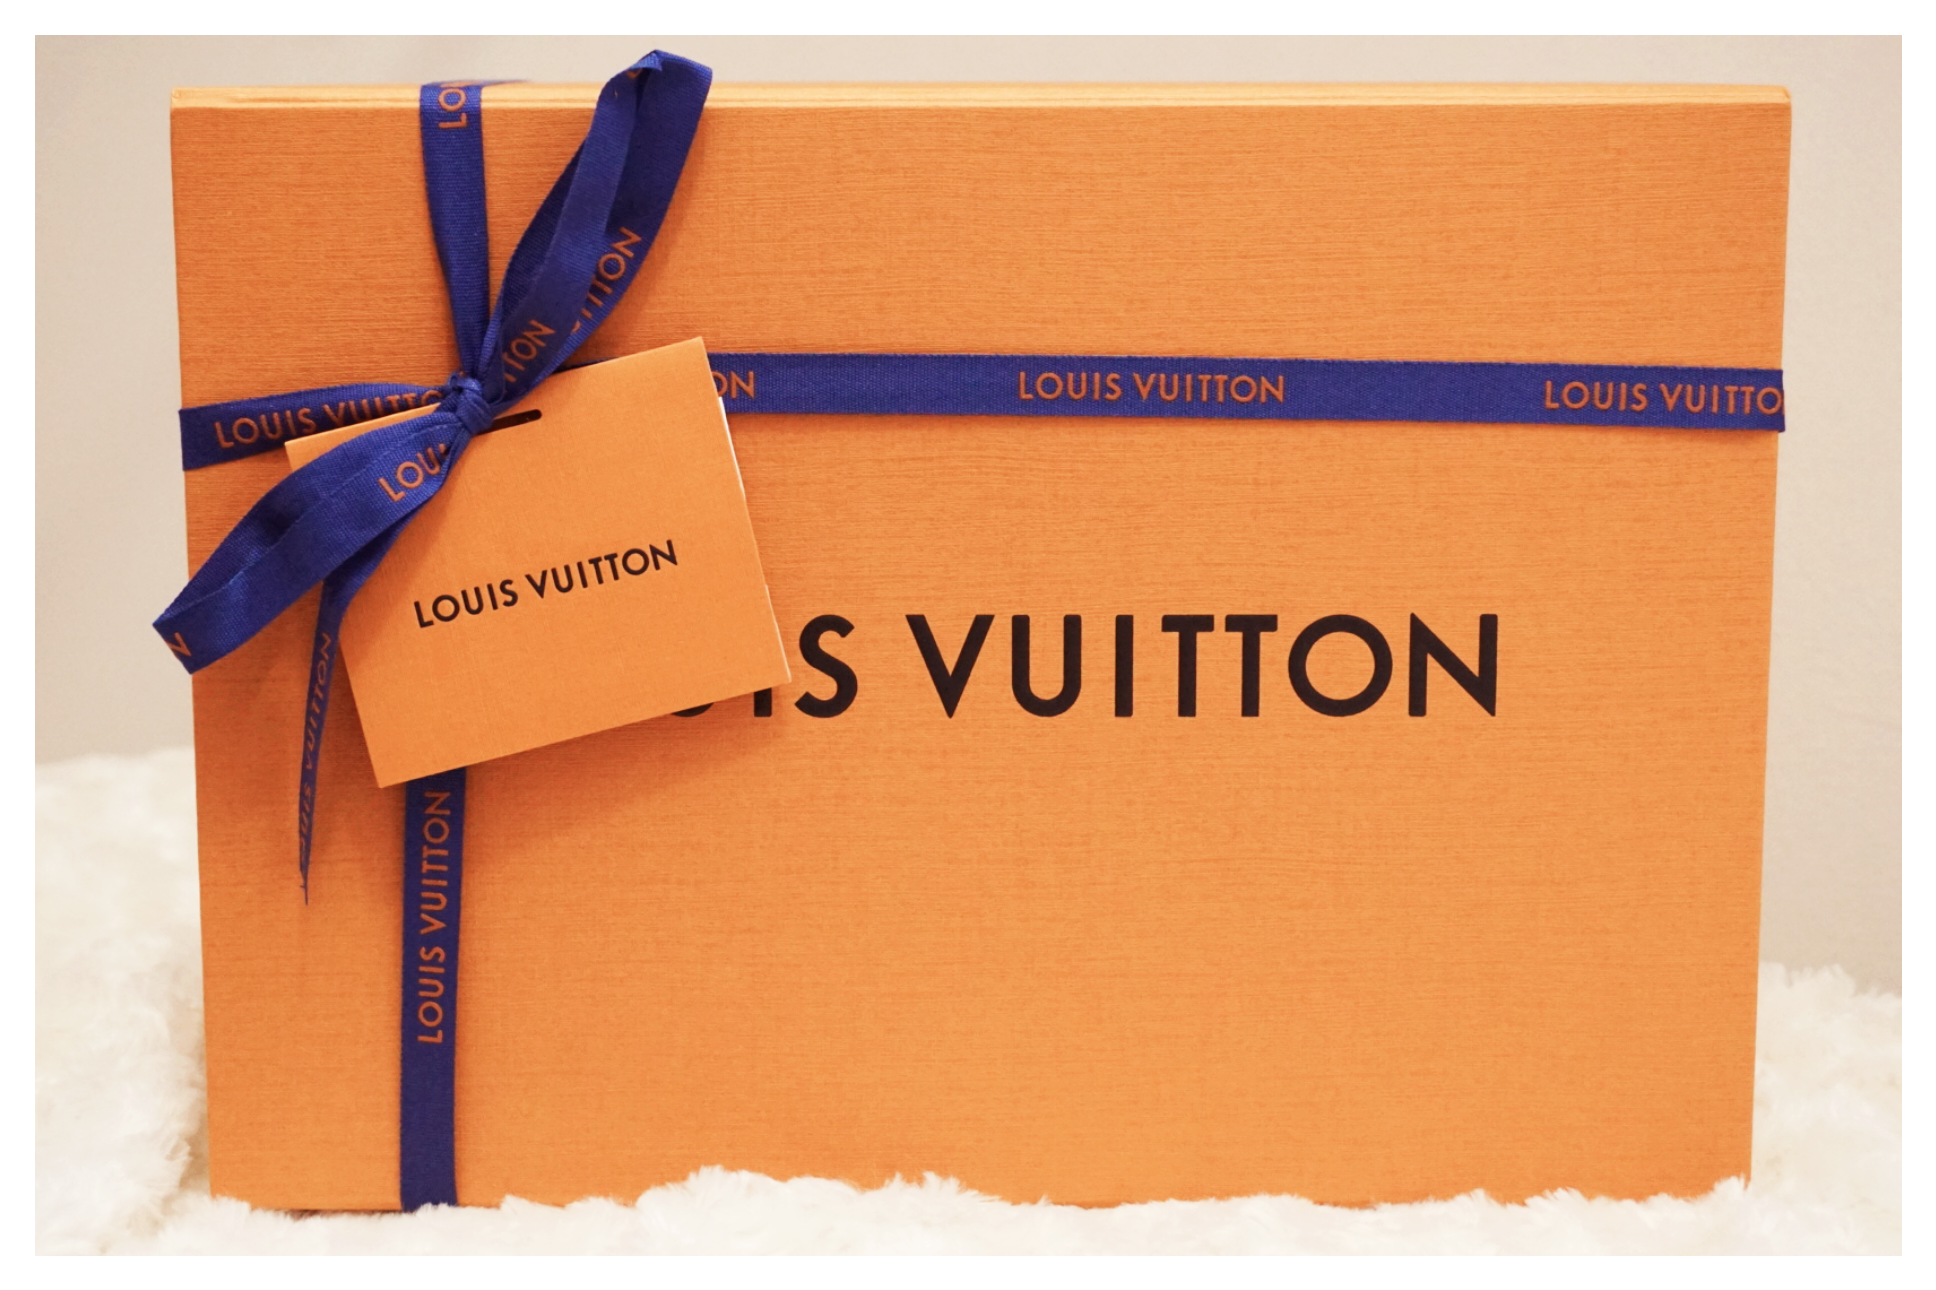 Rubber Meets The Road! Ft. Louis Vuitton Sunbath Flat Mules